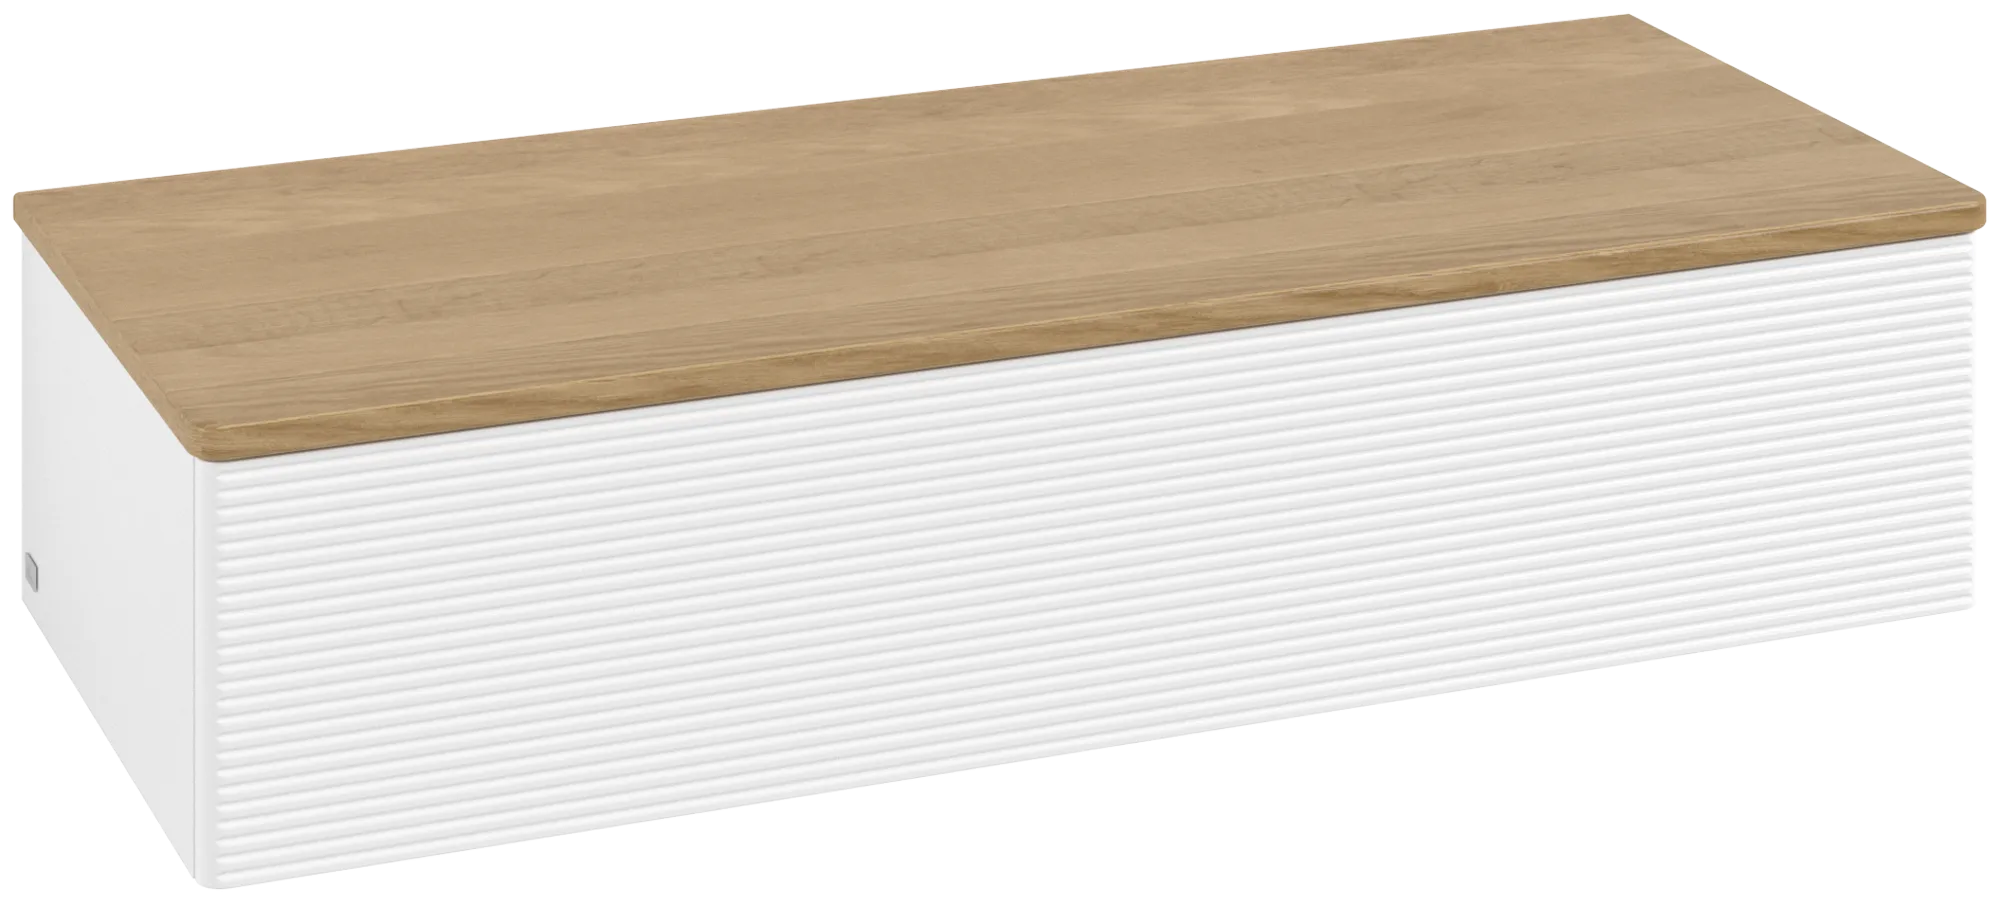 Bild von VILLEROY BOCH Antao Sideboard, mit Beleuchtung, 1 Auszug, 1200 x 268 x 500 mm, Front mit Struktur, White Matt Lacquer / Honey Oak #L41101MT